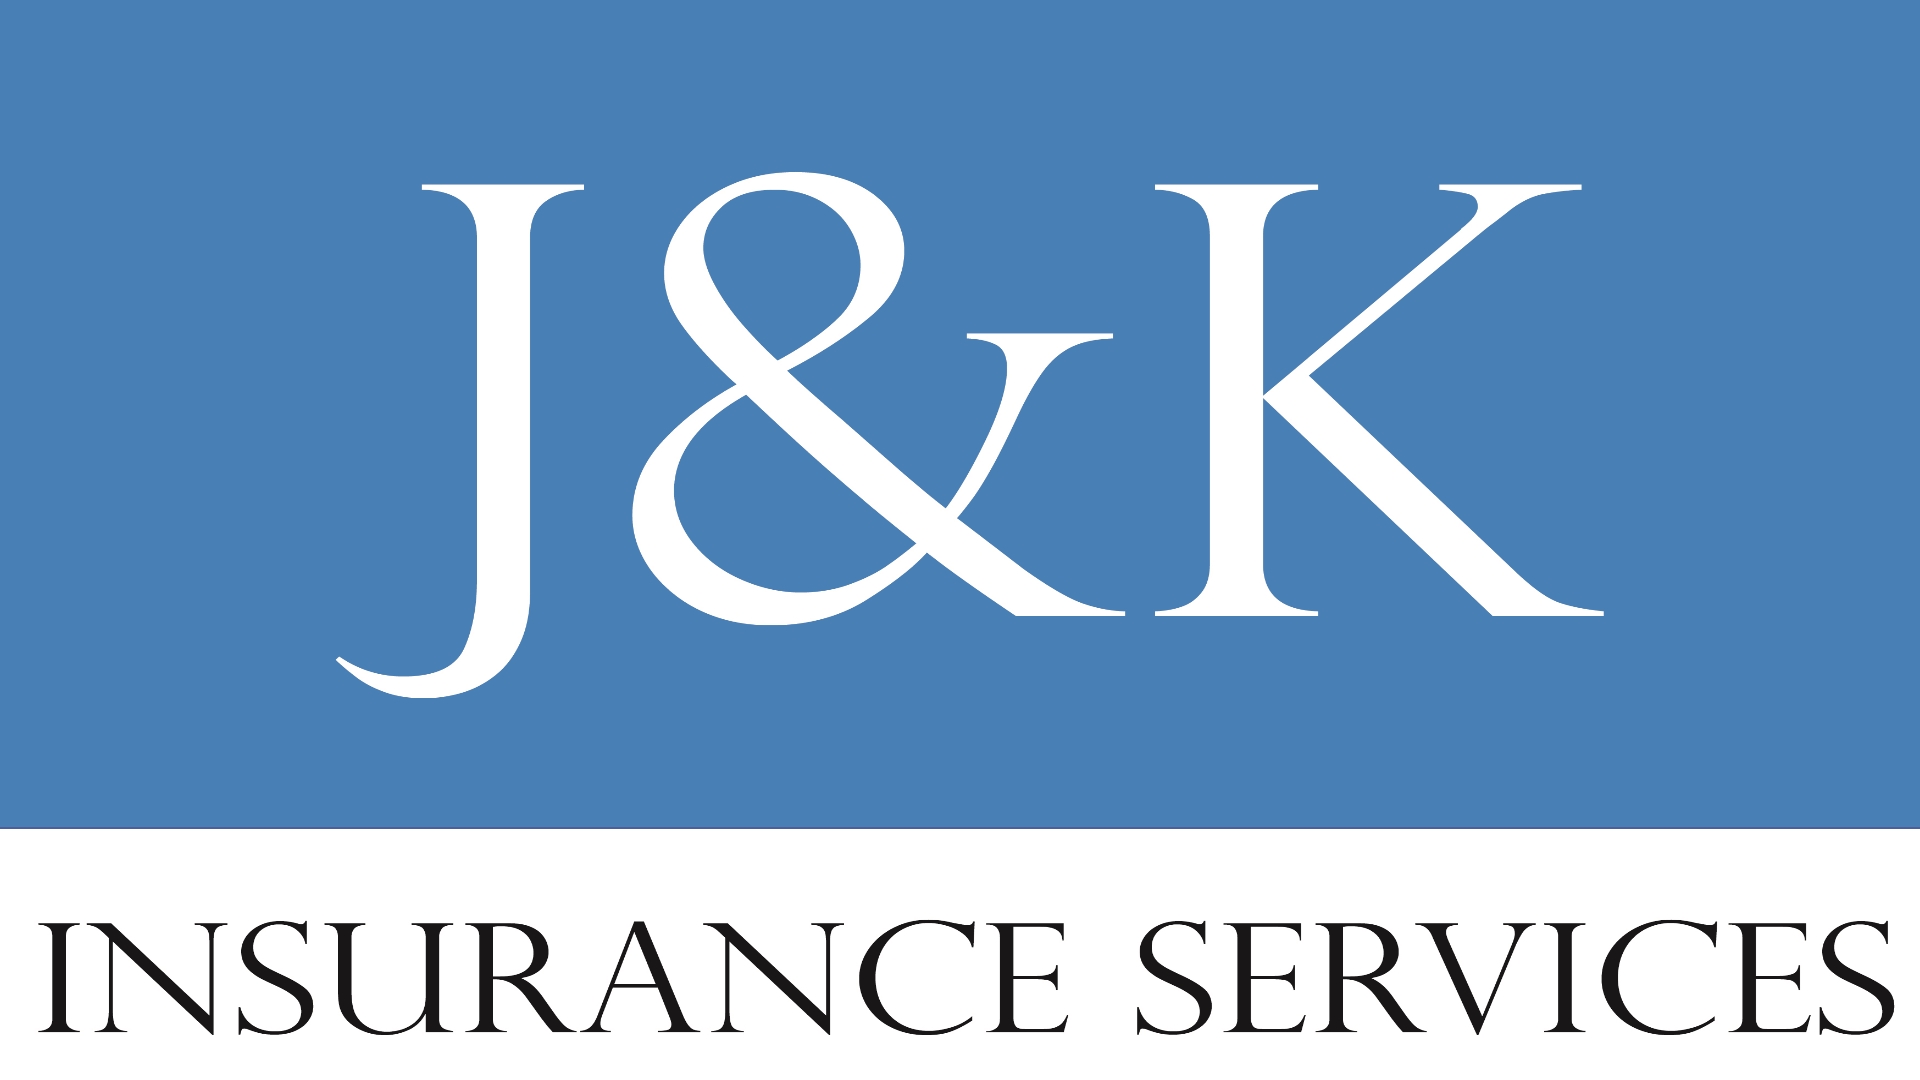 J & K Insurance Services